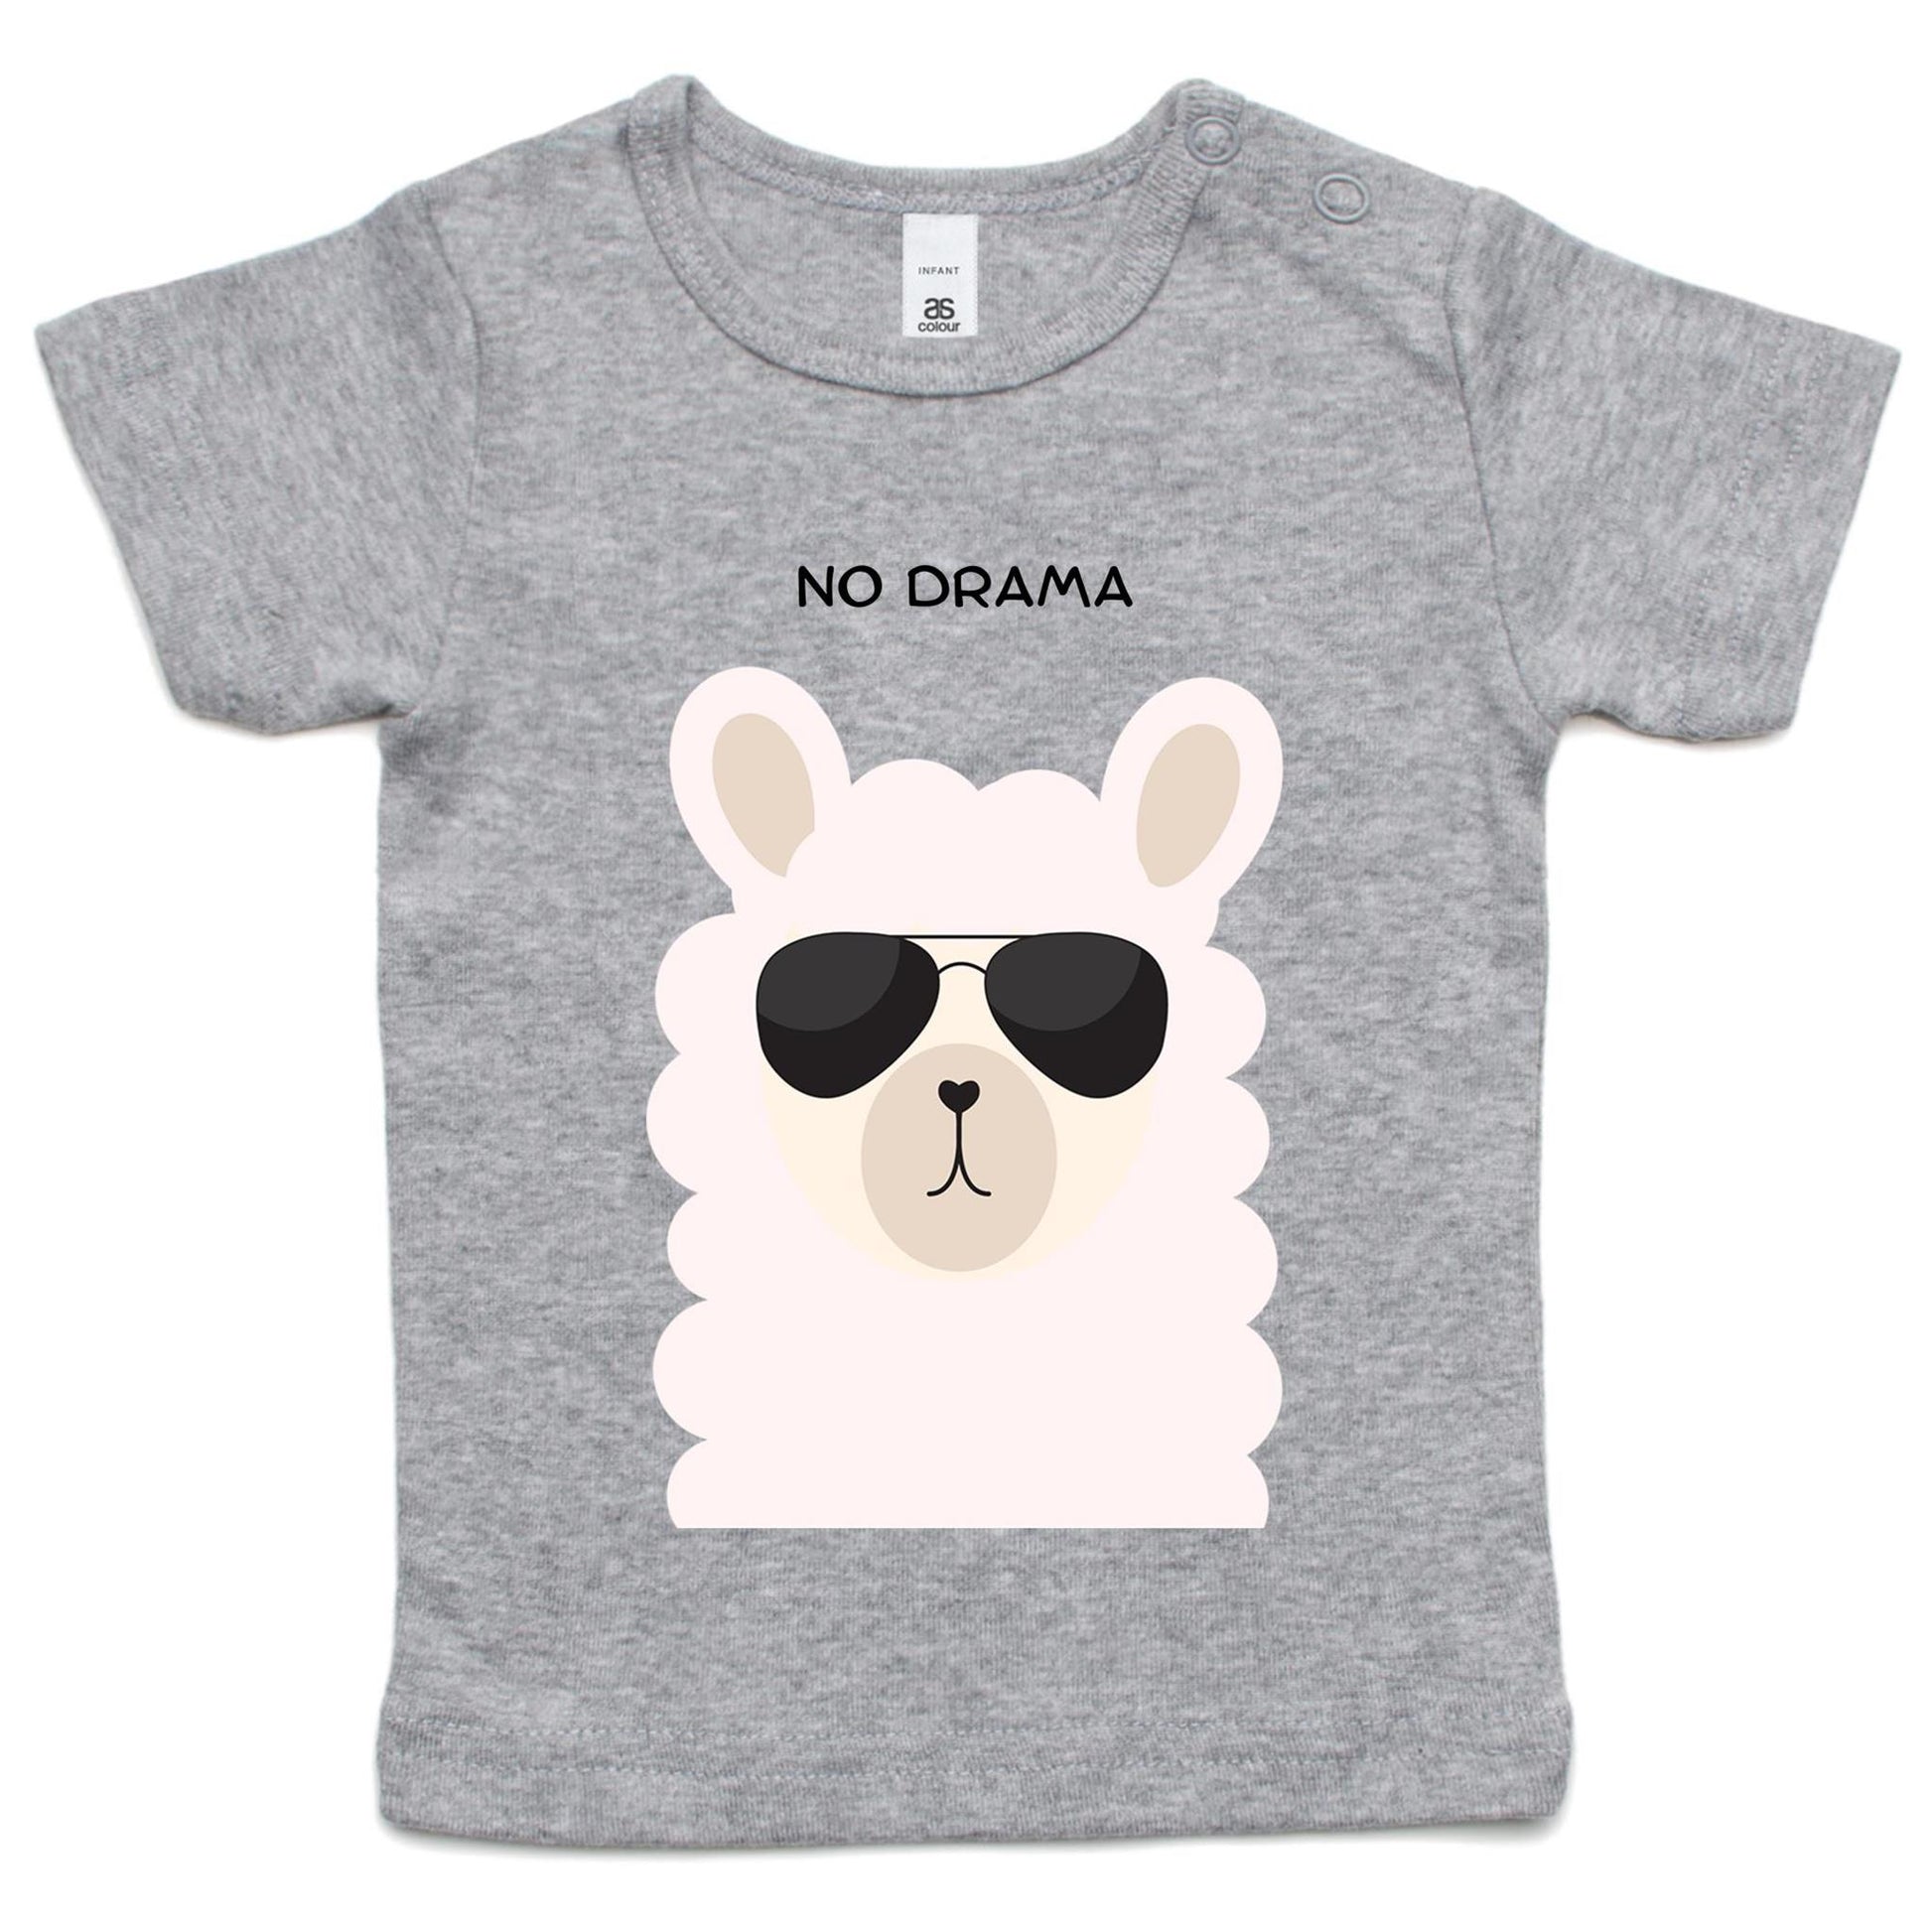 No Drama - Baby T-shirt Grey Marle Baby T-shirt animal